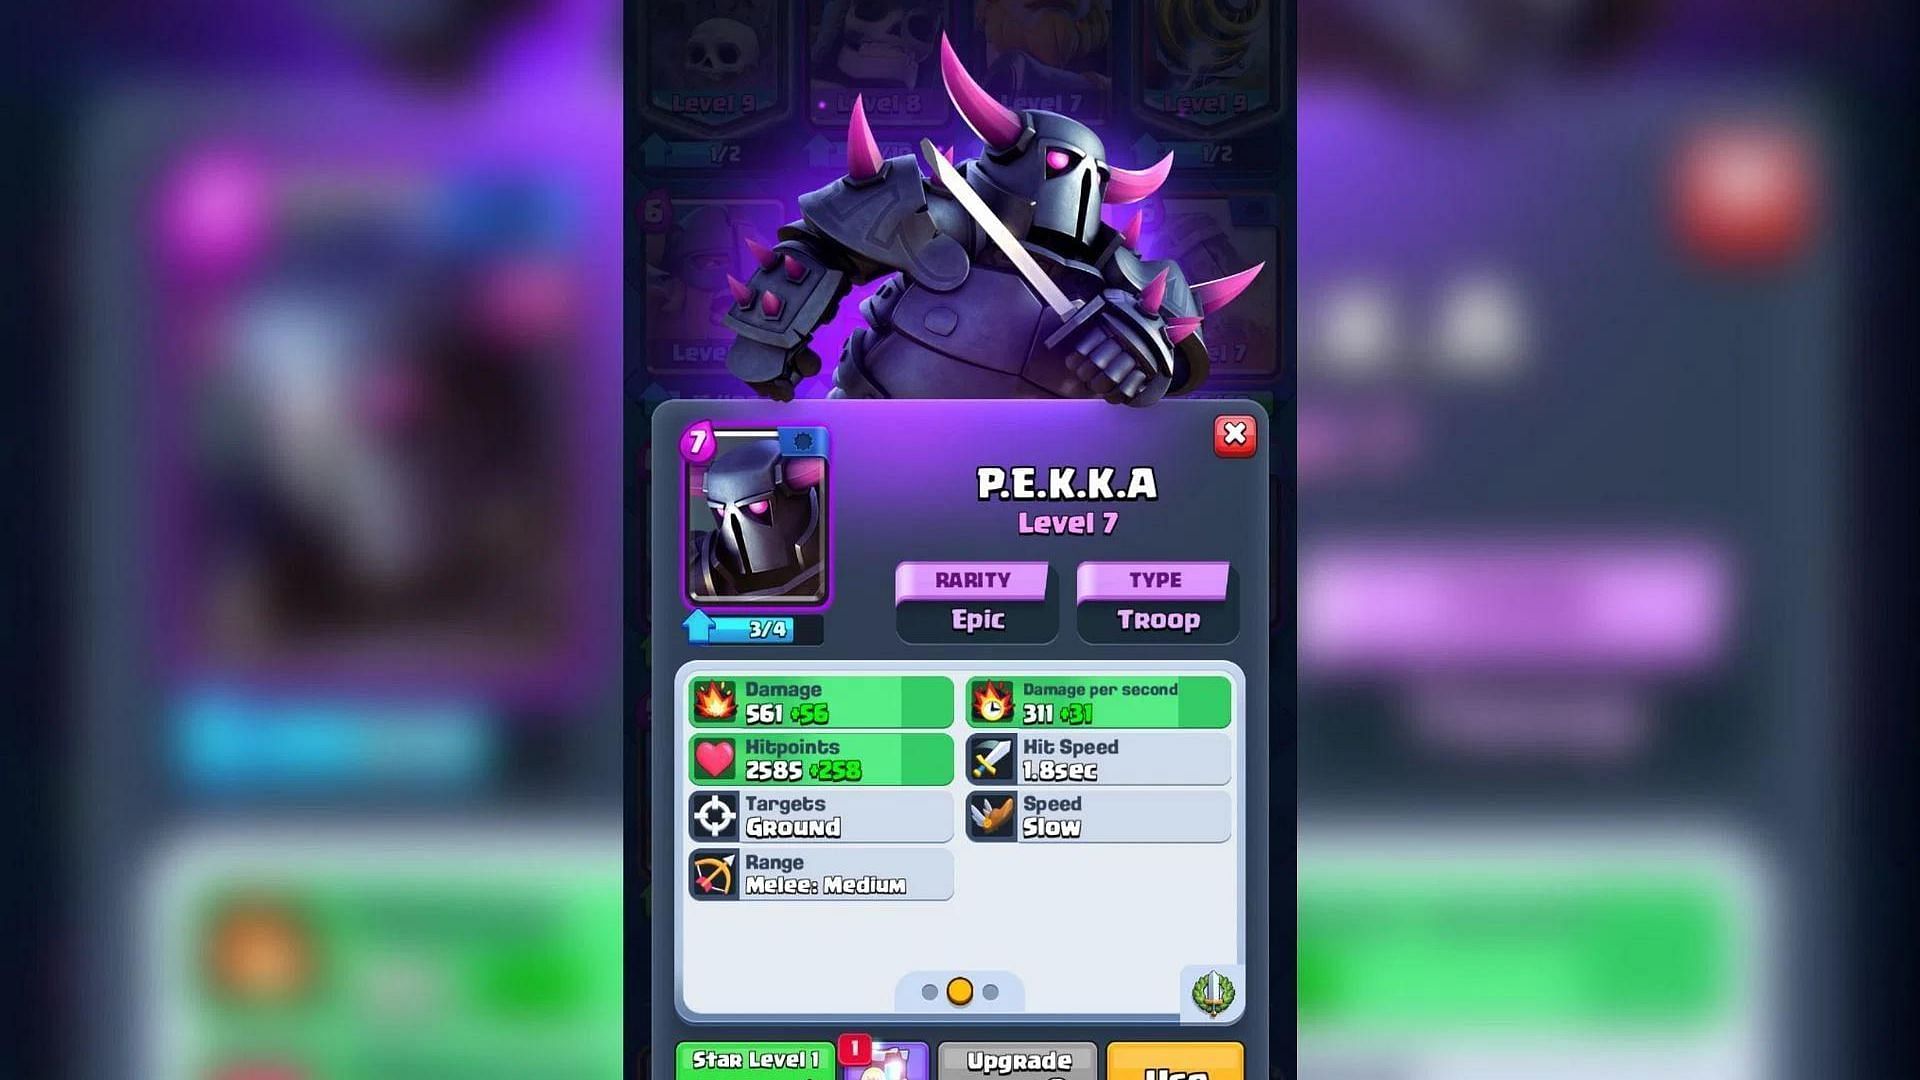 Pekka Card in Clash Royale (Image via Sportskeeda)